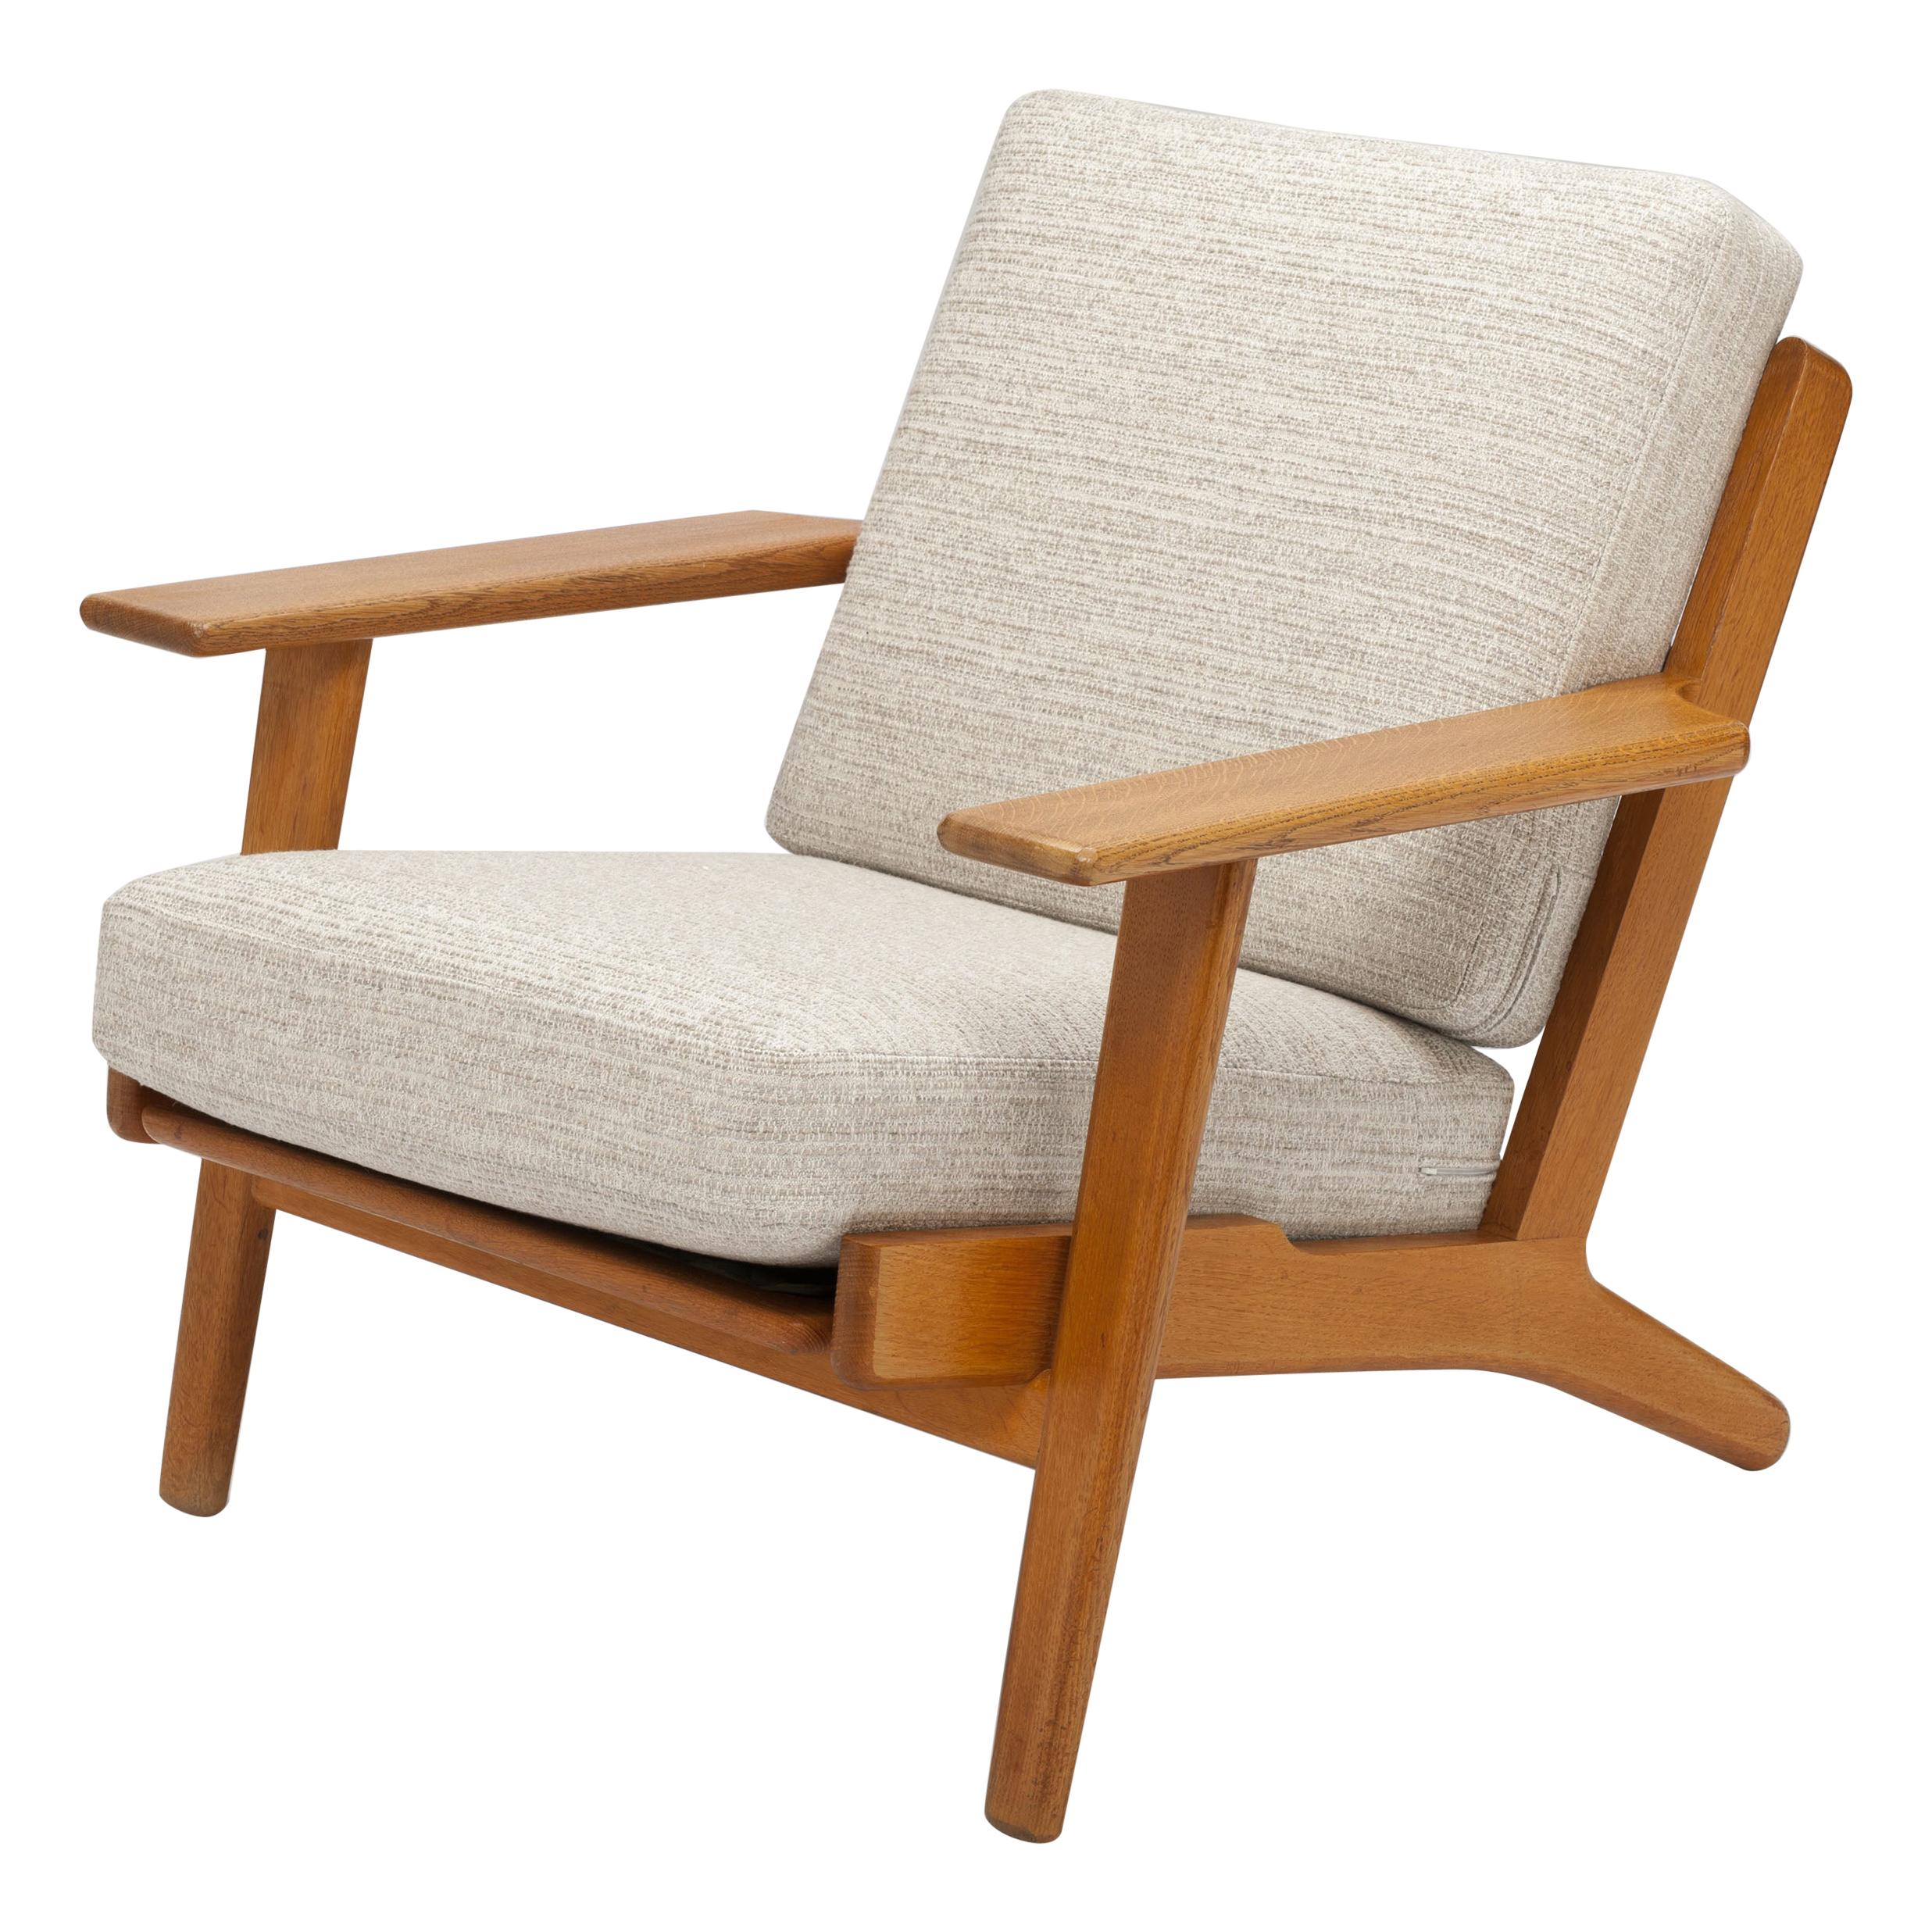 Hans Wegner Oak Lounge Chair GE290 by GETAMA '1 of 3 Chairs'